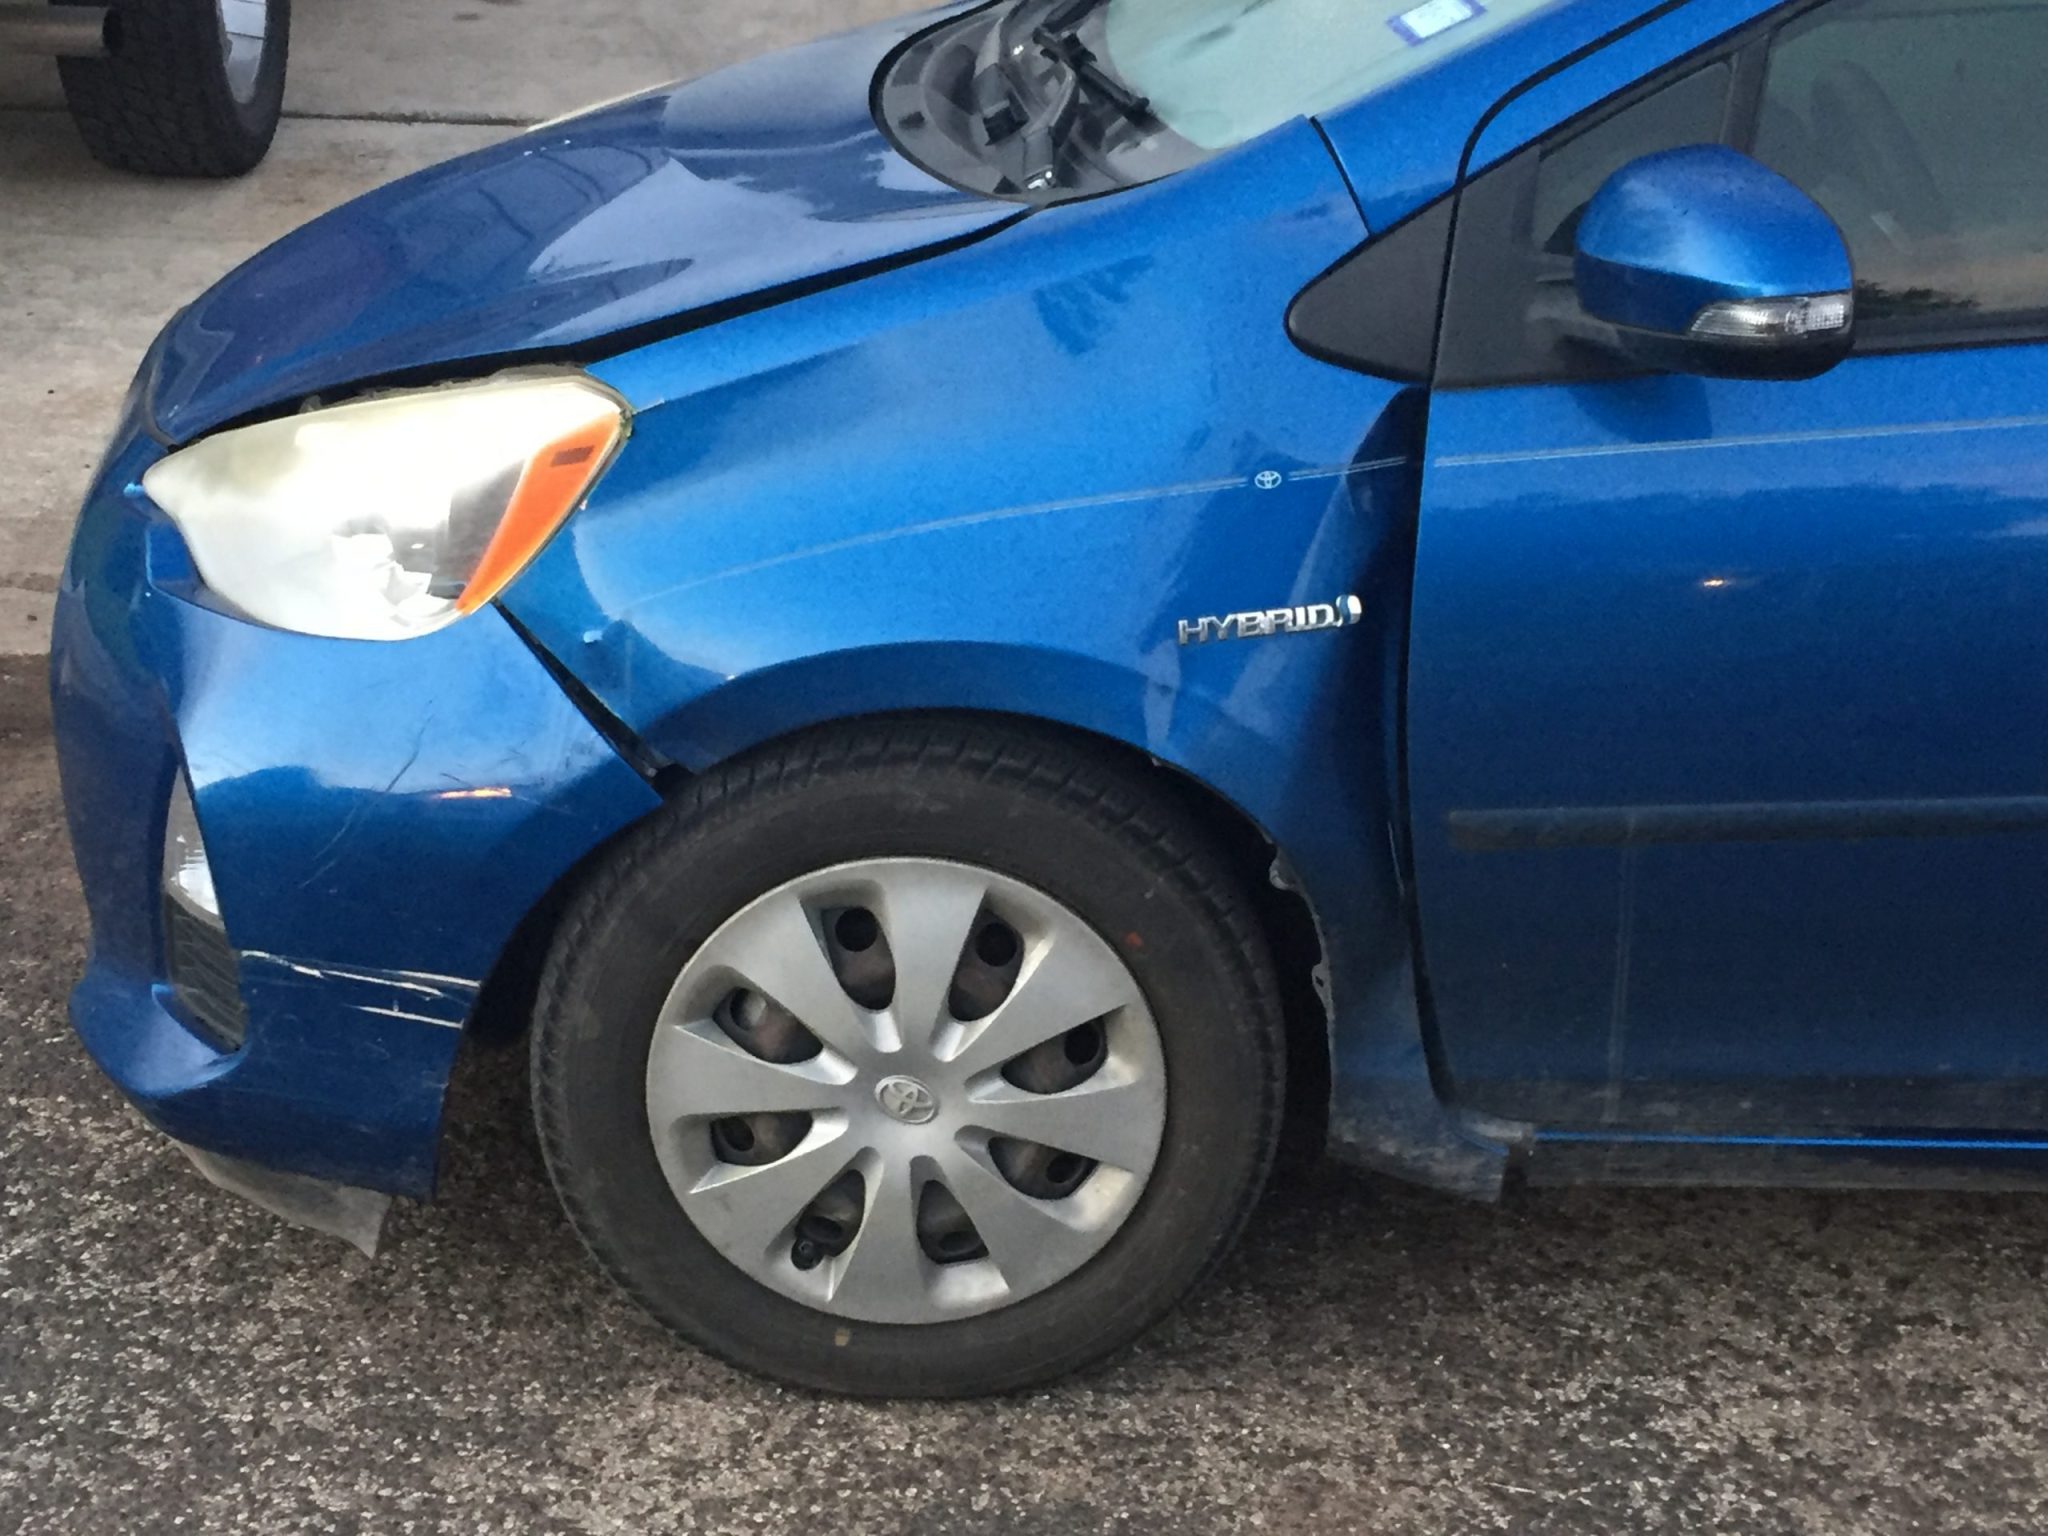 Parts of a collision repair estimate